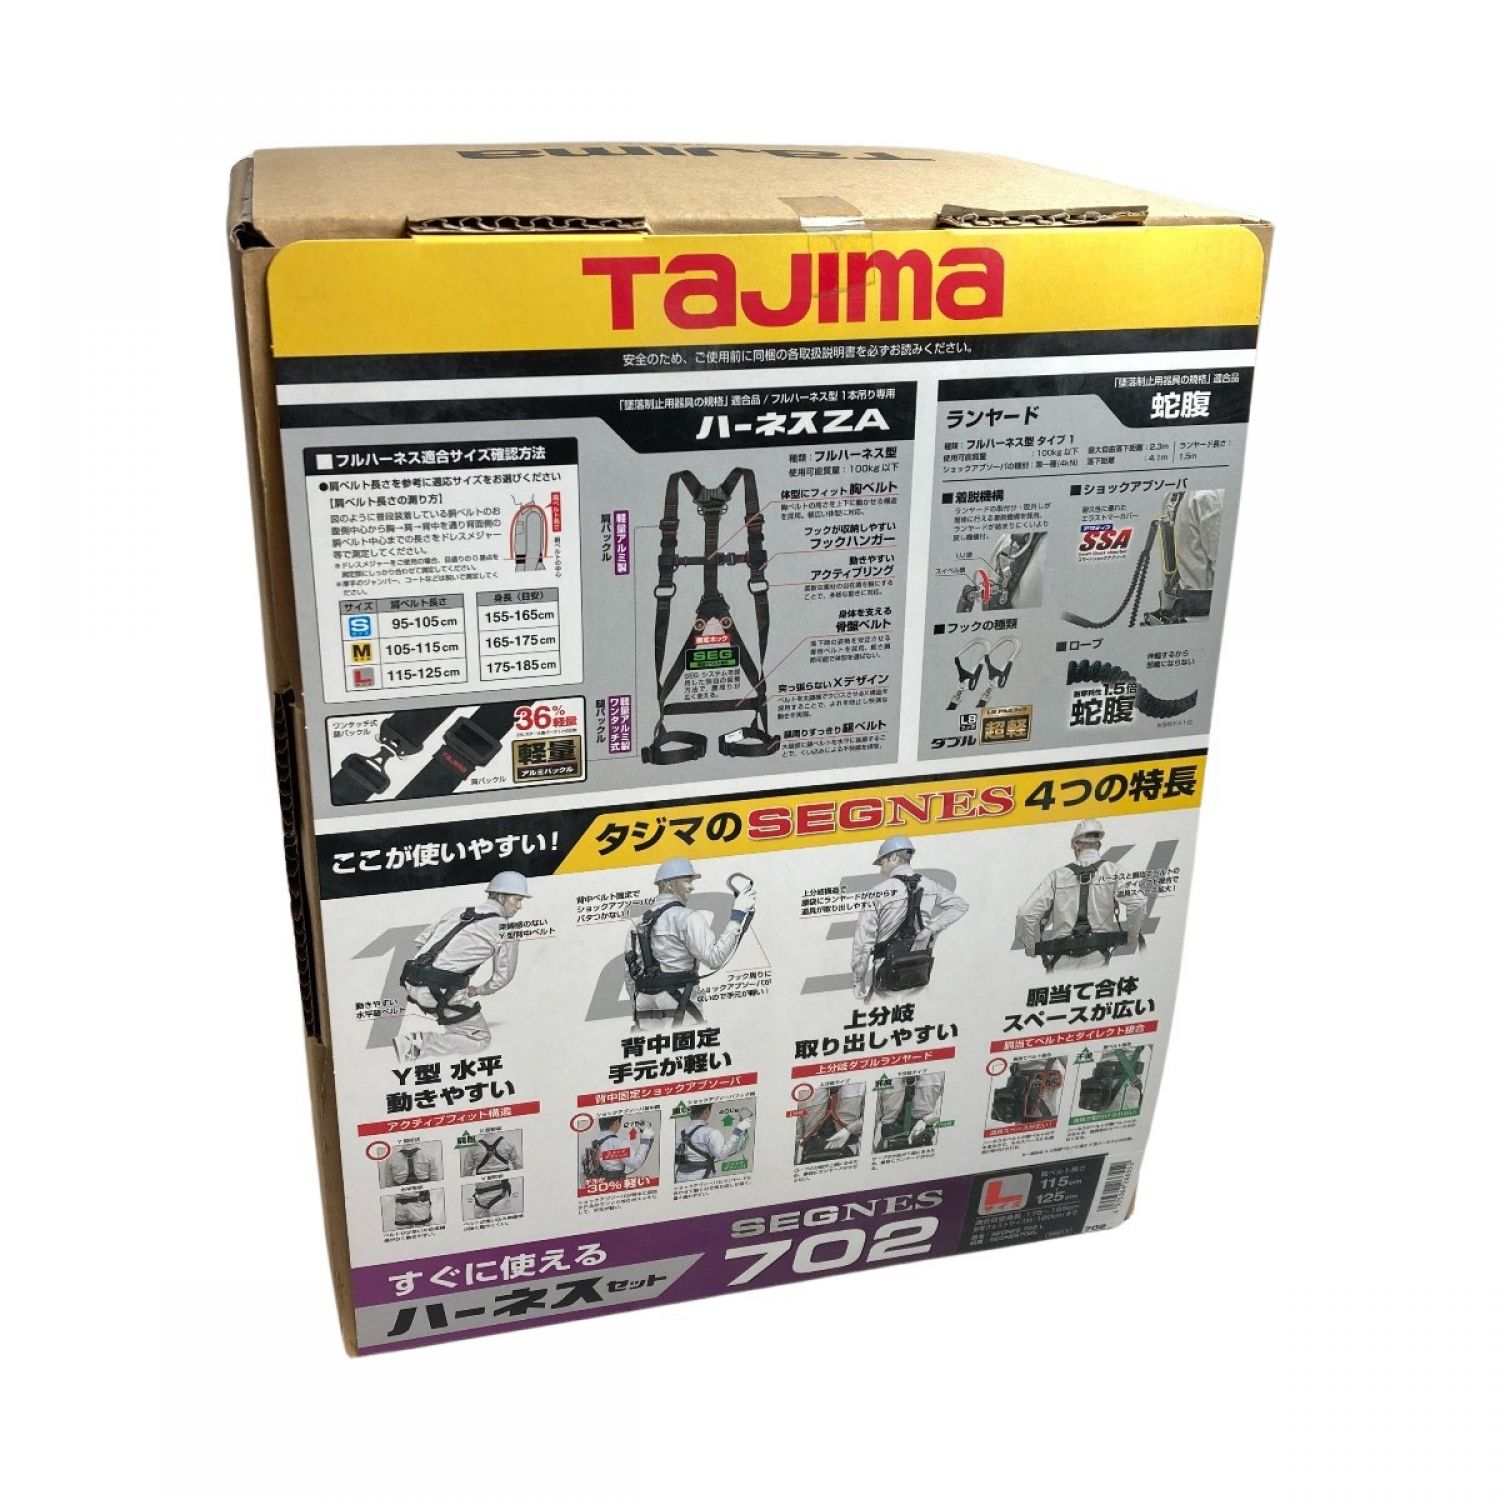 TAJIMA タジマ フルハーネス型安全帯 セグネス 702 ランヤード分離型セット 新規格 SEGNES702L ブラック Sランク